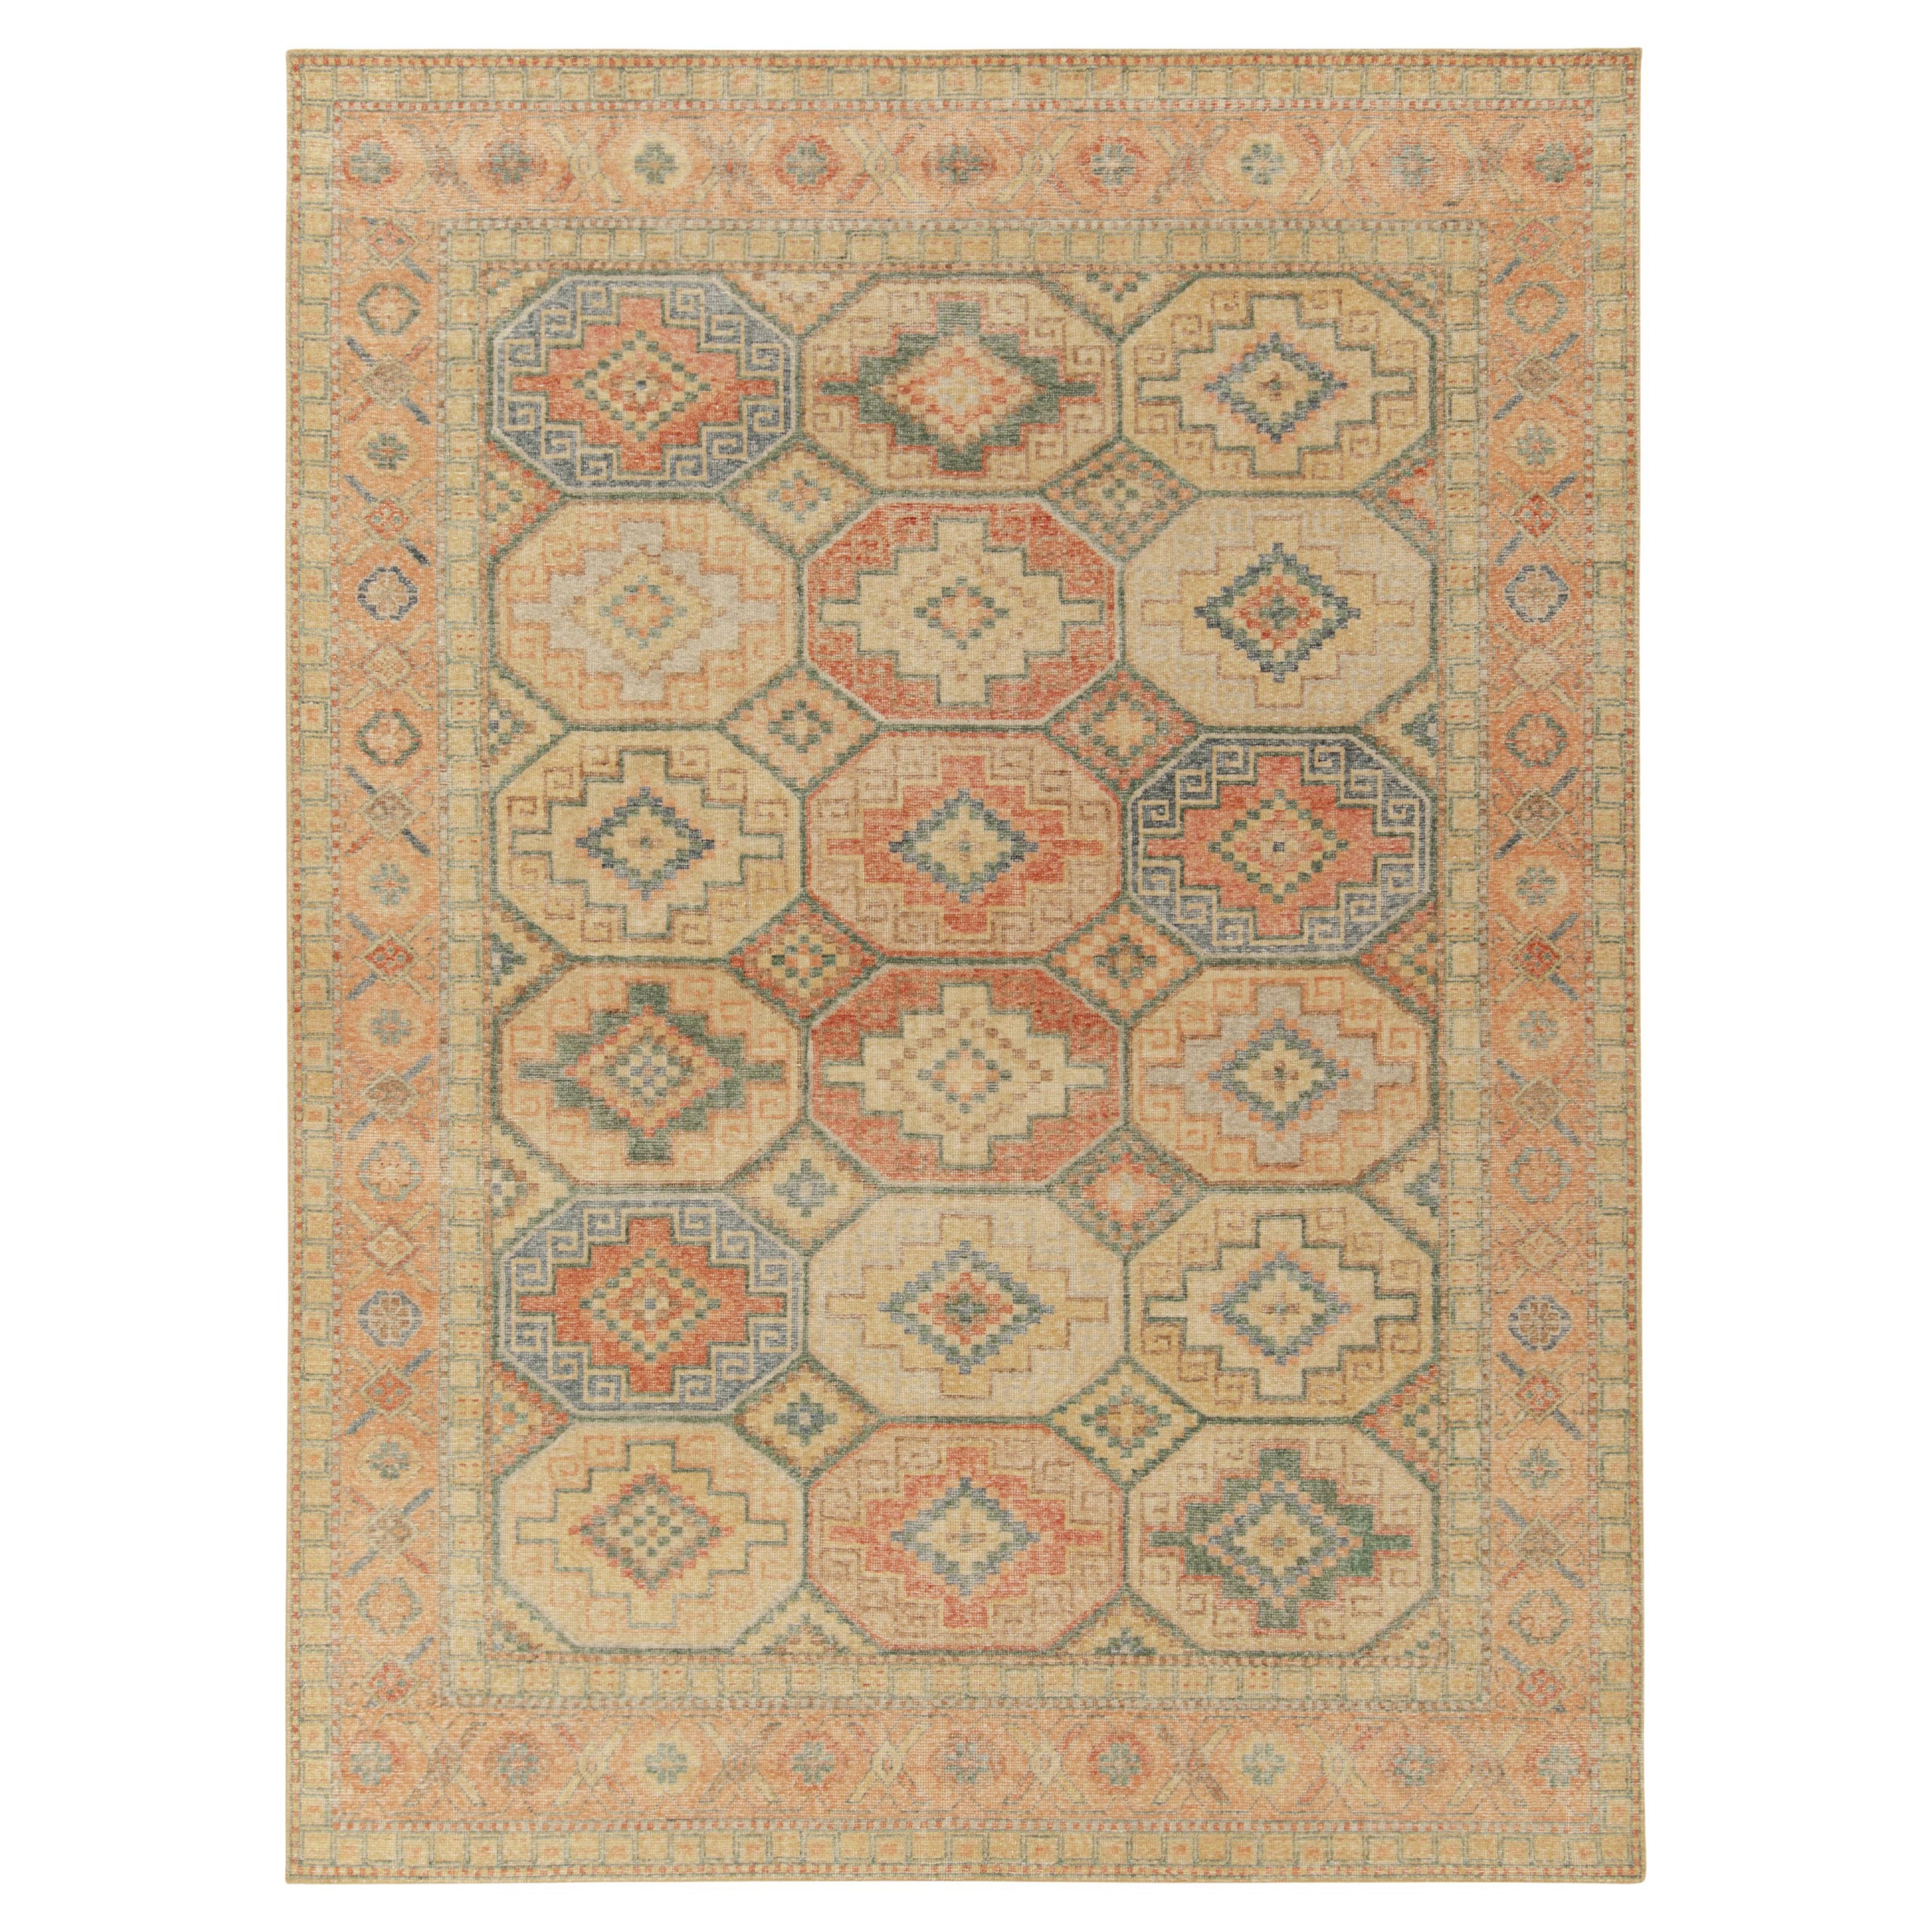 Rug & Kilim's Distressed Style Teppich in Orange, Blau & Beige Geometrisches Muster